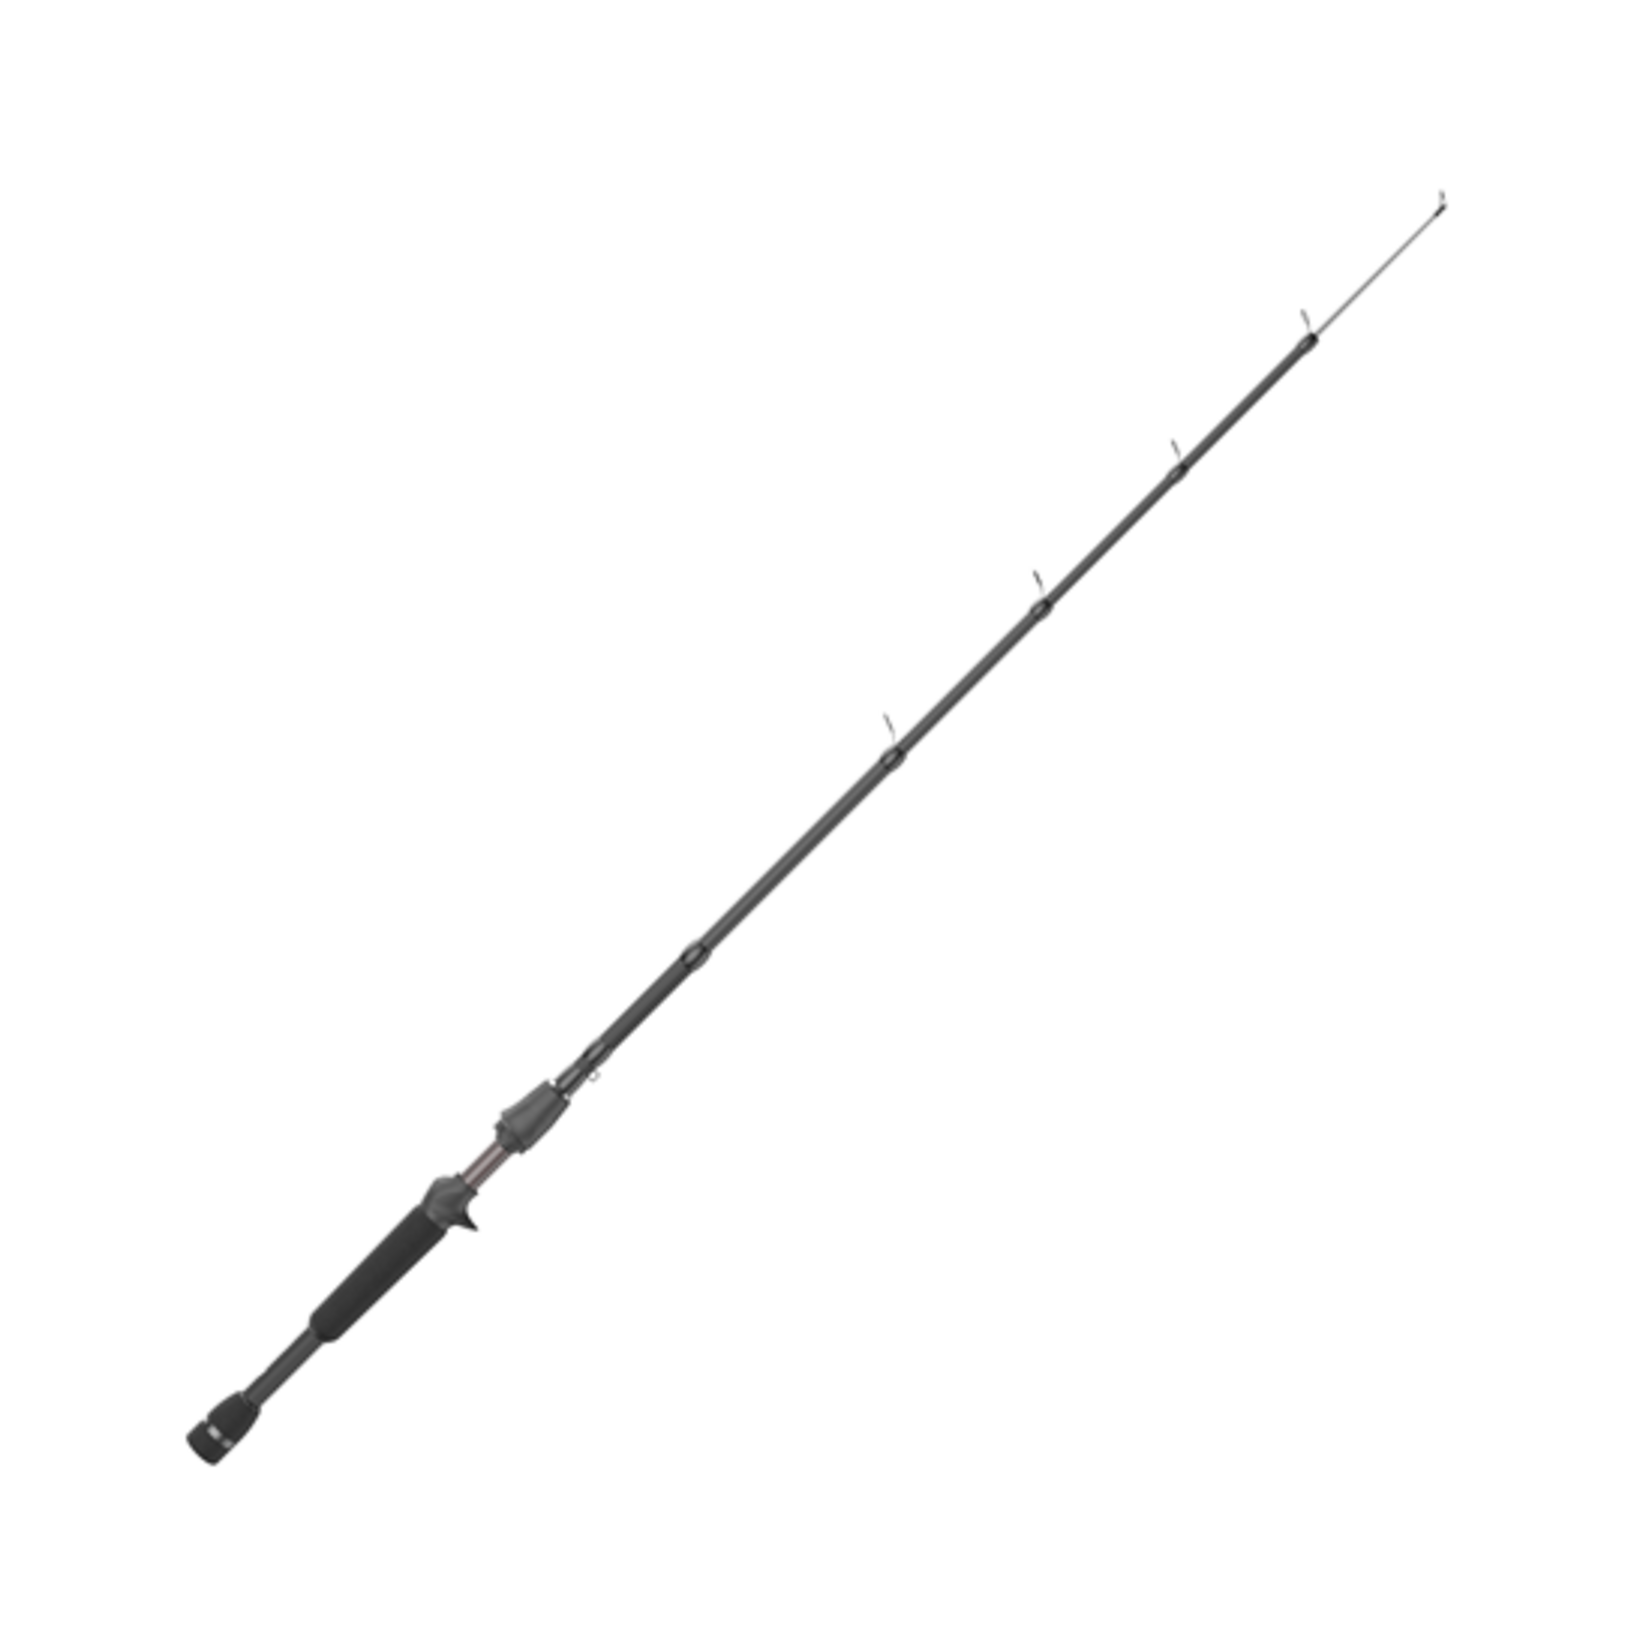 Quantum Embark Tele 6'6 5-Section Medium-Heavy Casting Rod